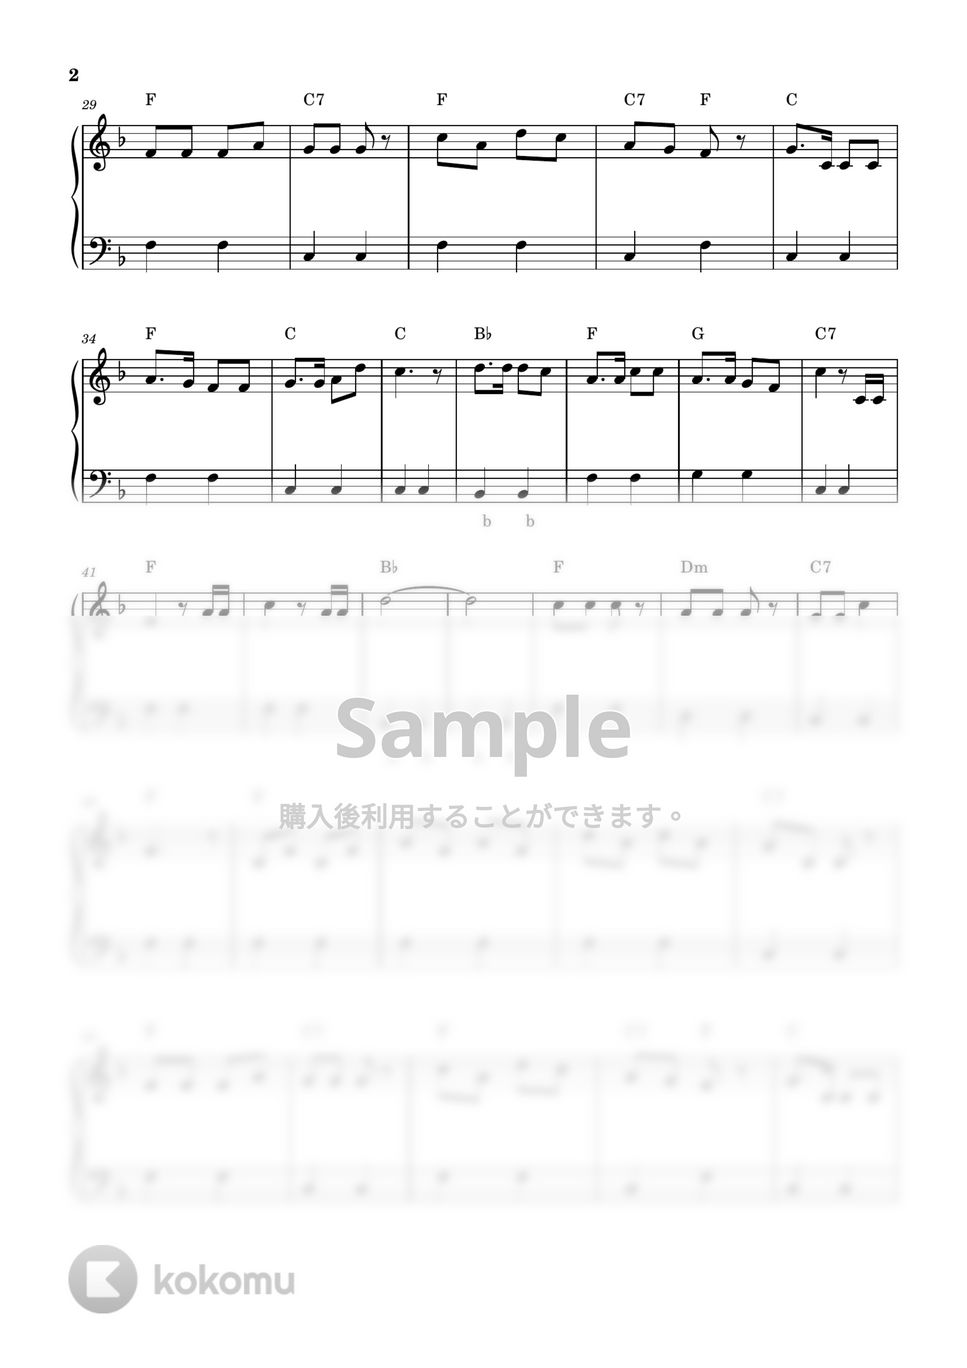 汽車ポッポ (ピアノ楽譜 / かんたん両手 / 歌詞付き / ドレミ付き / 初心者向き) by piano.tokyo